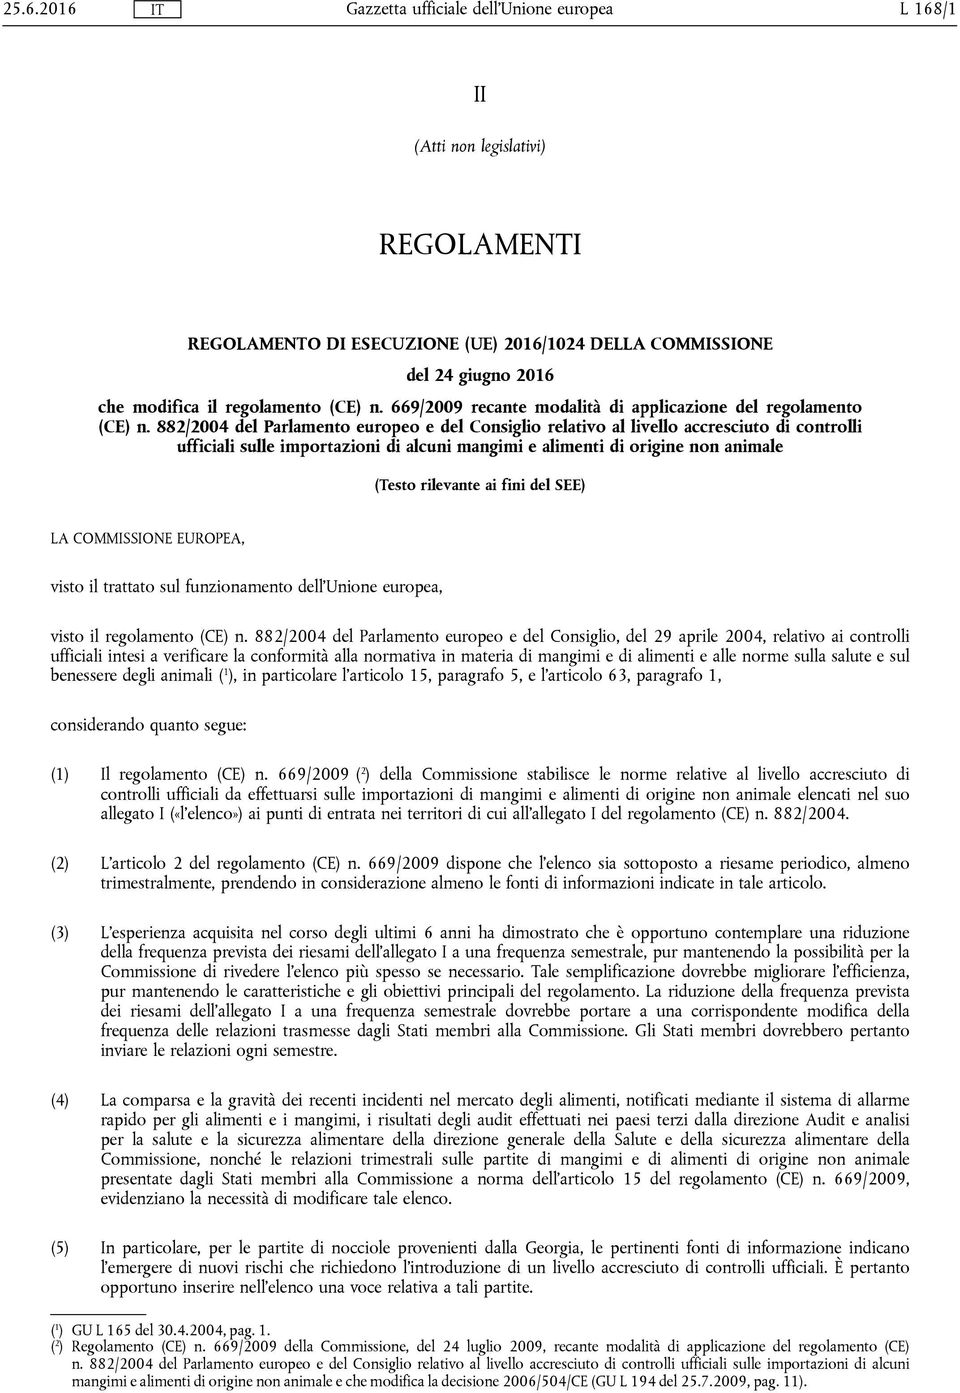 882/2004 del Parlamento europeo e del Consiglio relativo al livello accresciuto di controlli ufficiali sulle importazioni di alcuni mangimi e alimenti di origine non animale (Testo rilevante ai fini